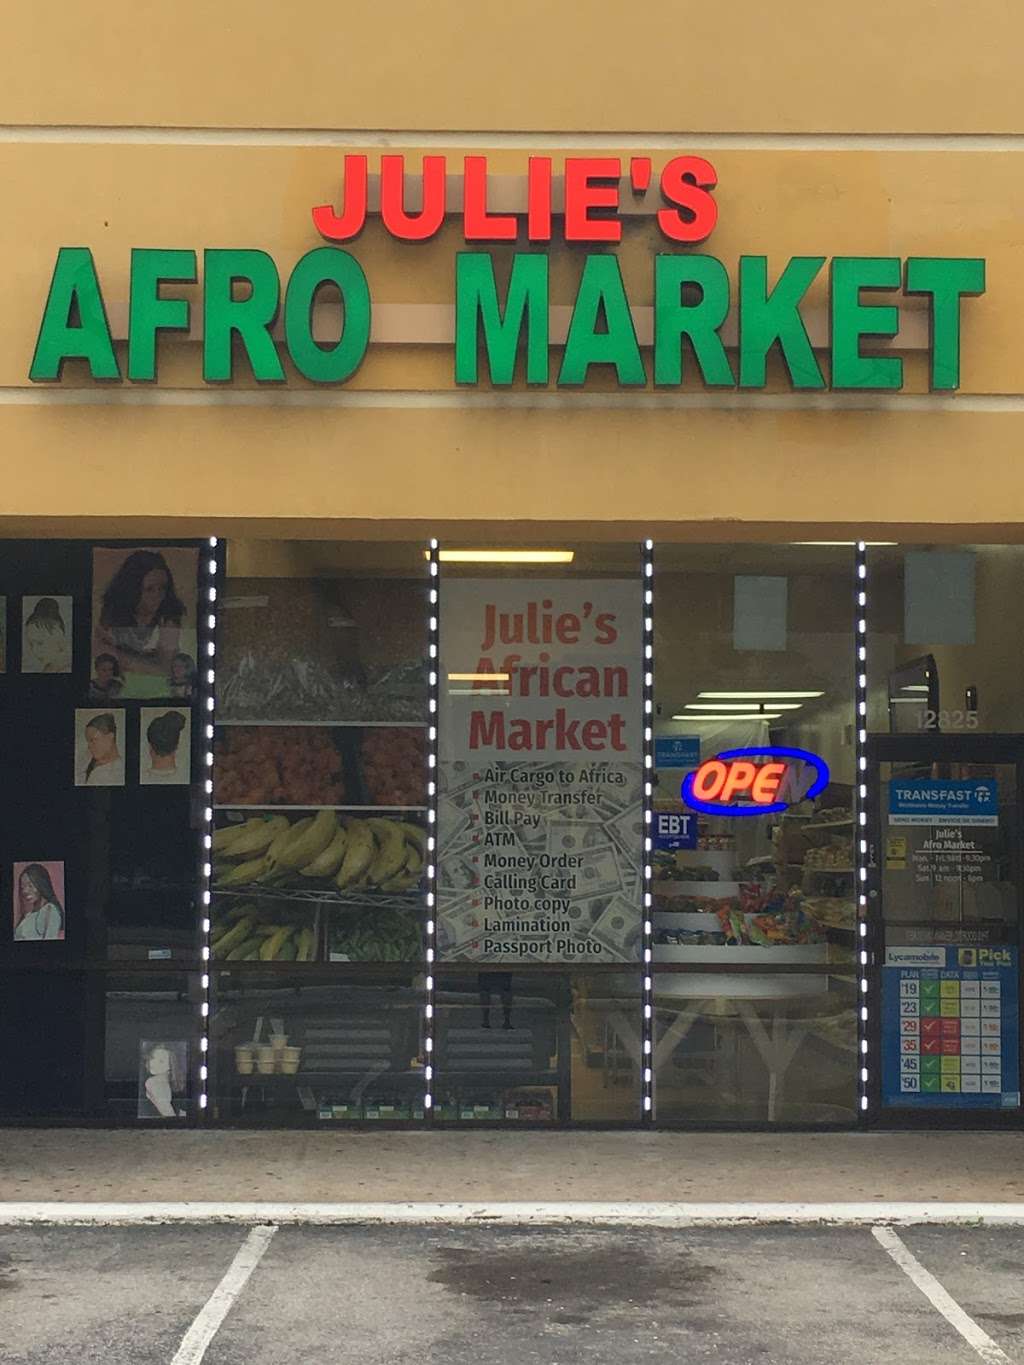 Julies Afro Market & Jollof Kitchen | 12825 Westheimer Rd, Houston, TX 77077, USA | Phone: (346) 219-2599